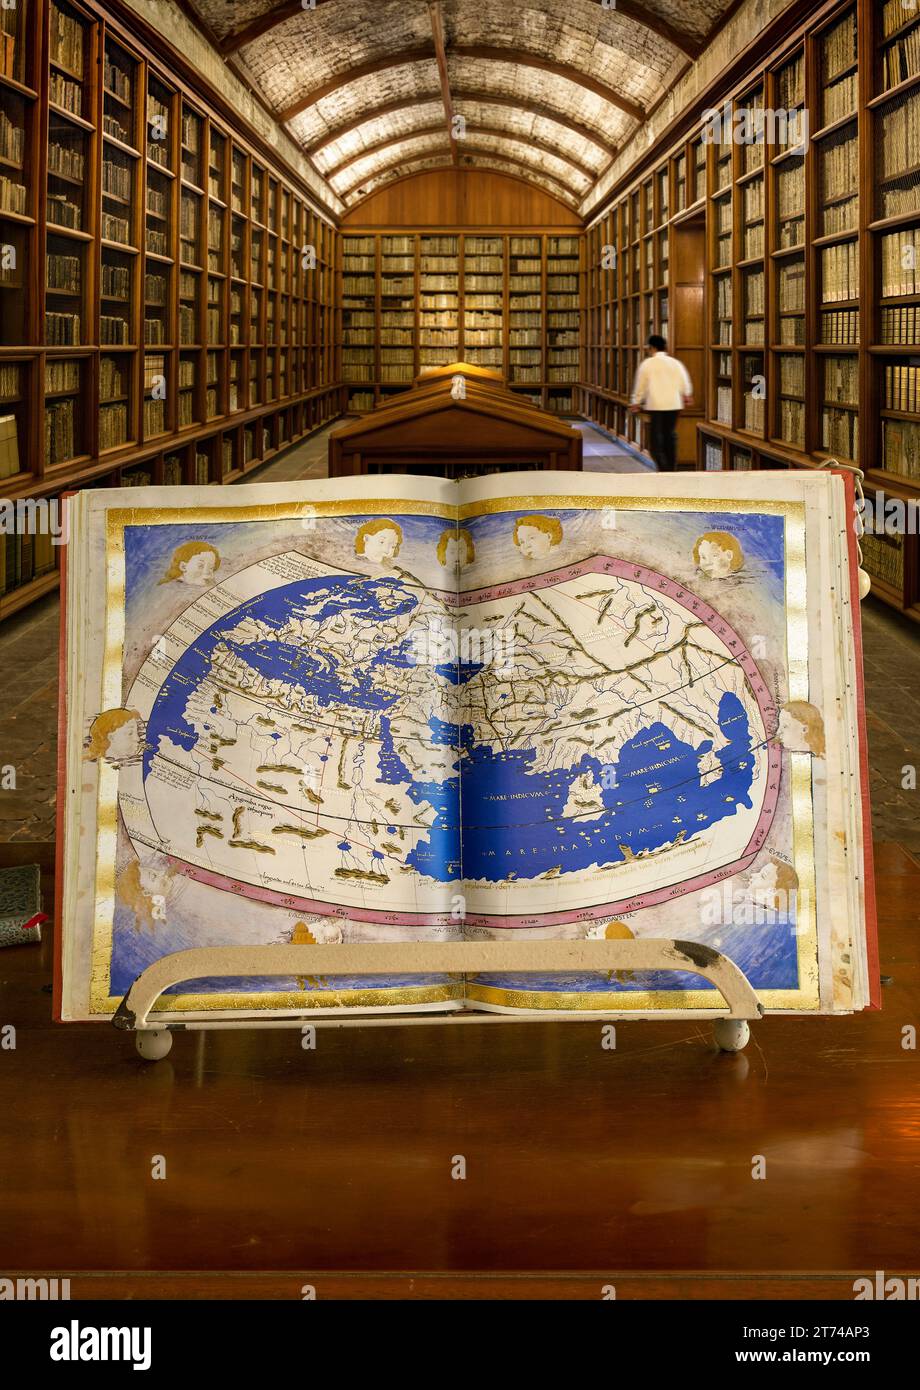 Carte du monde de Ptolémée, faite par Nicolaus Germanus ca. 1470. Fait partie du codex manuscrit de la géographie de Ptolémée. Codex Urbinas Latinus 274. Banque D'Images